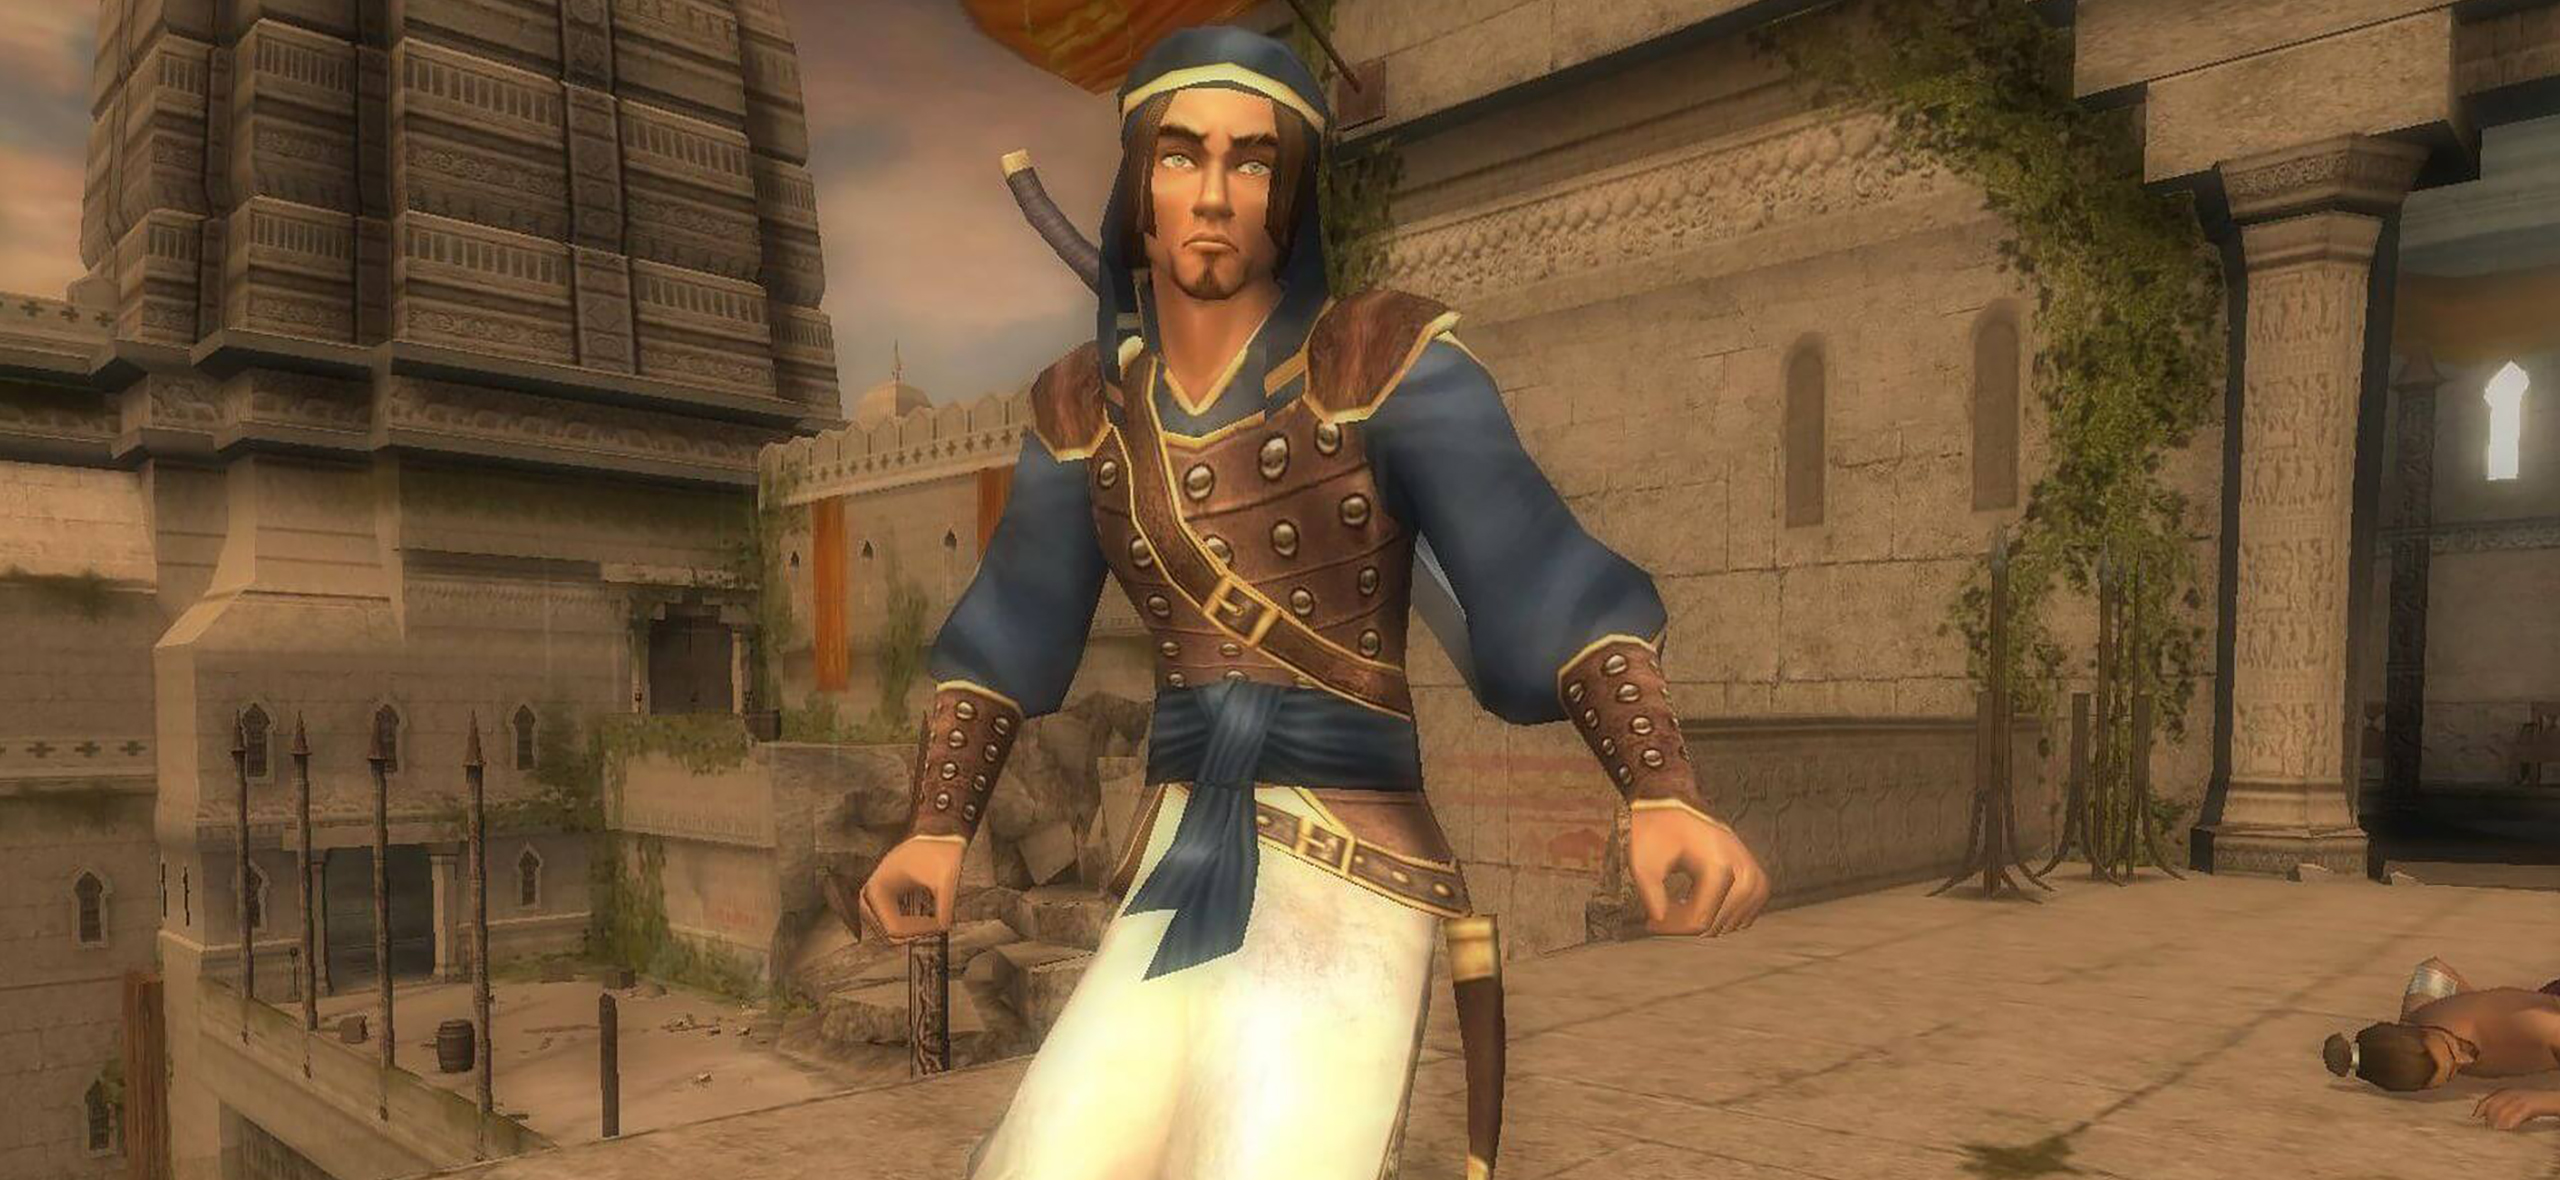 Prince of Persia: The Sands of Time — за что мы полюбили экшен 2003 года об управлении временем